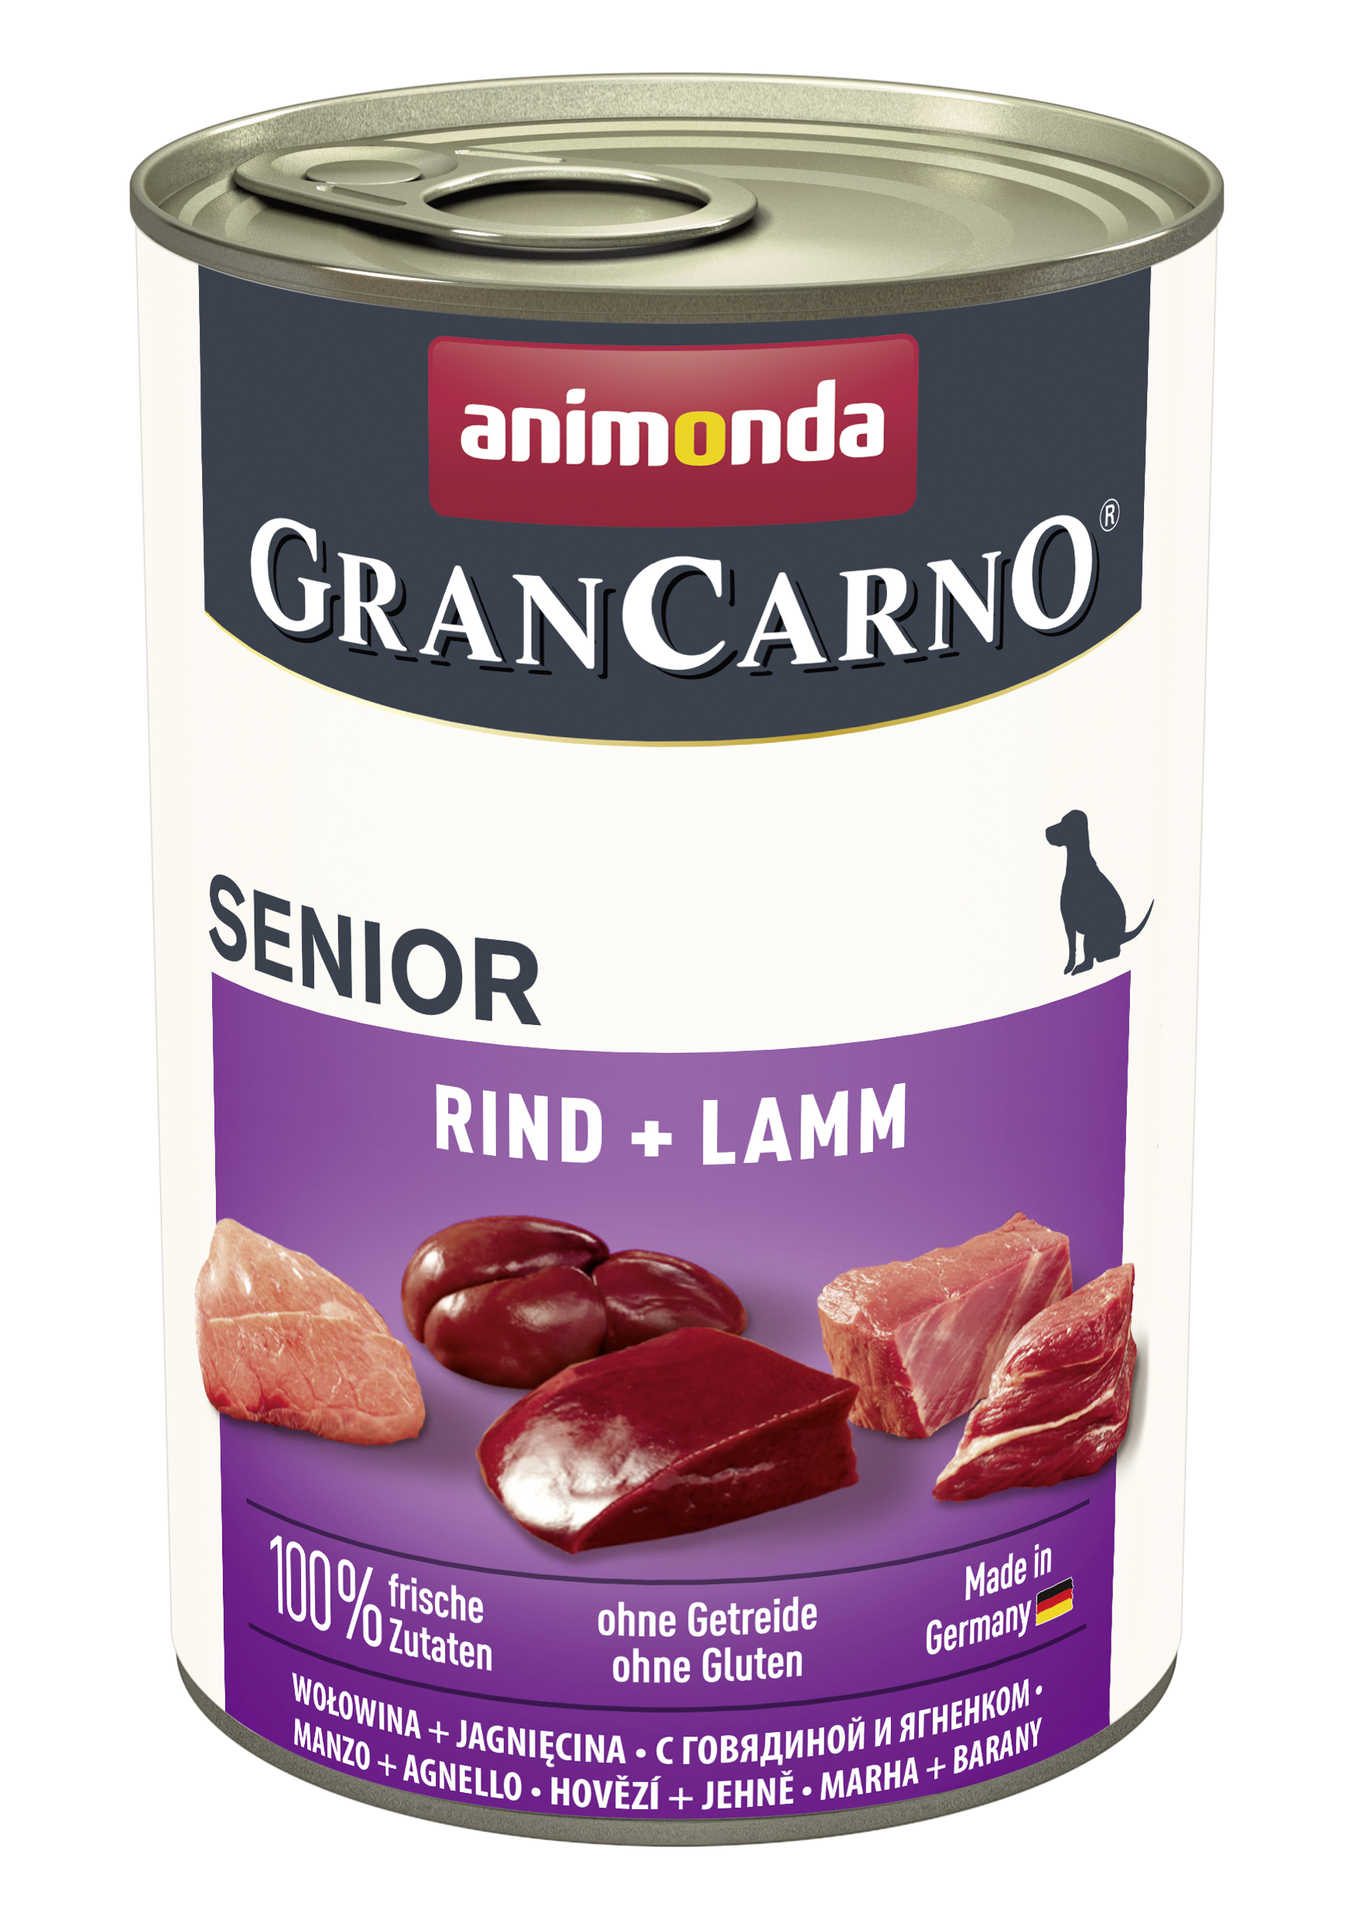 Dog GranCarno Senior Rind + Lamm